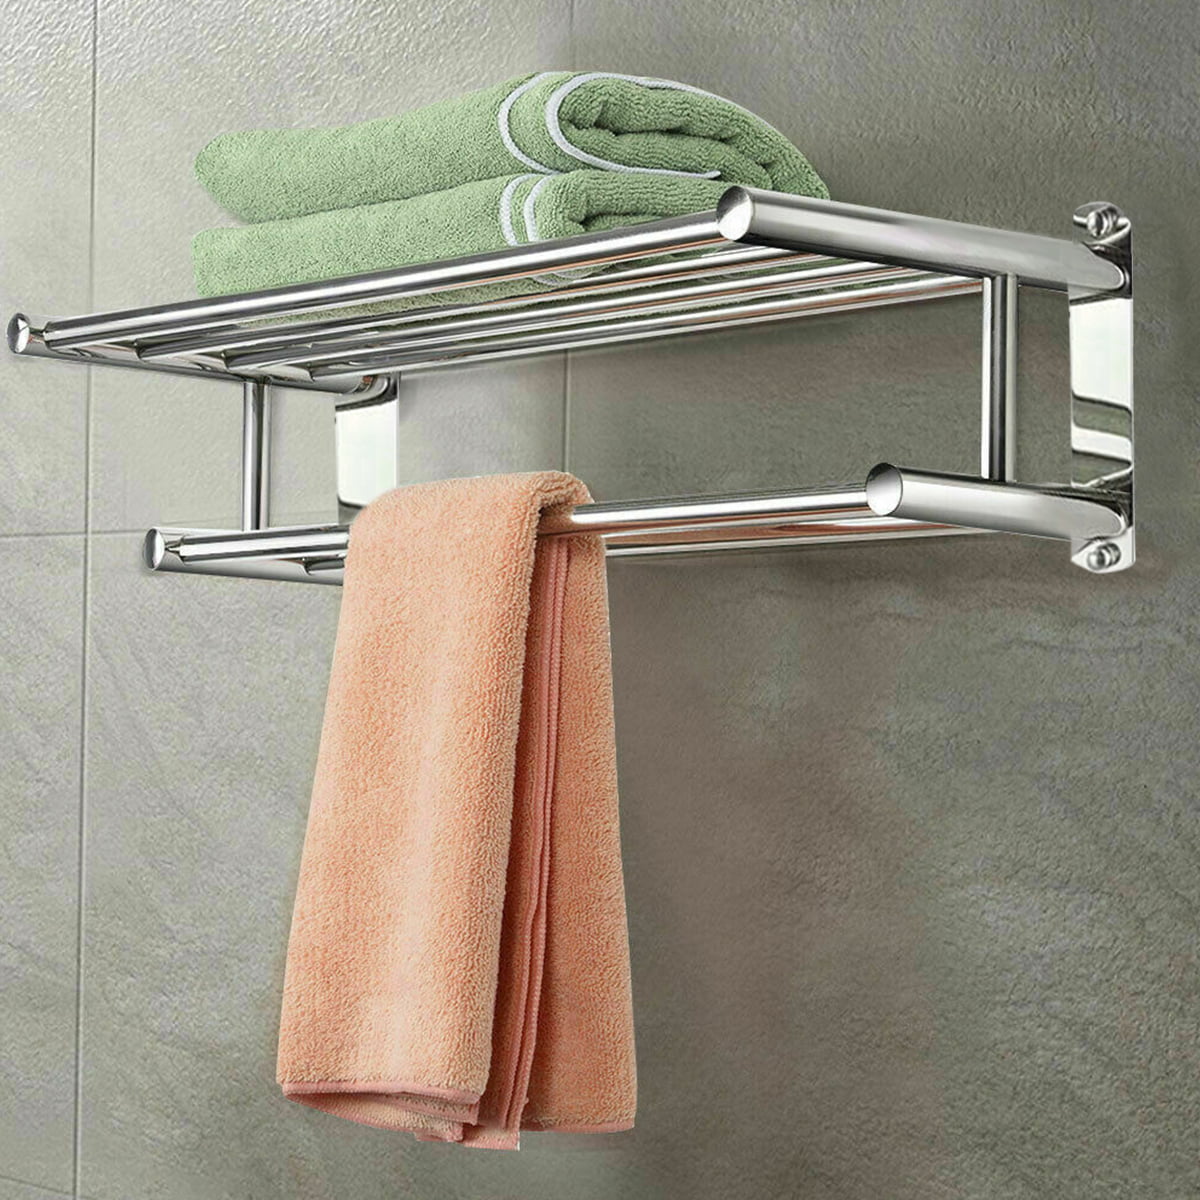 Wall-Mounted Towel Rack Waterproof and Rust-Proof Wall-Mounted Towel Hook Stainless Steel Bathroom Towel Rack